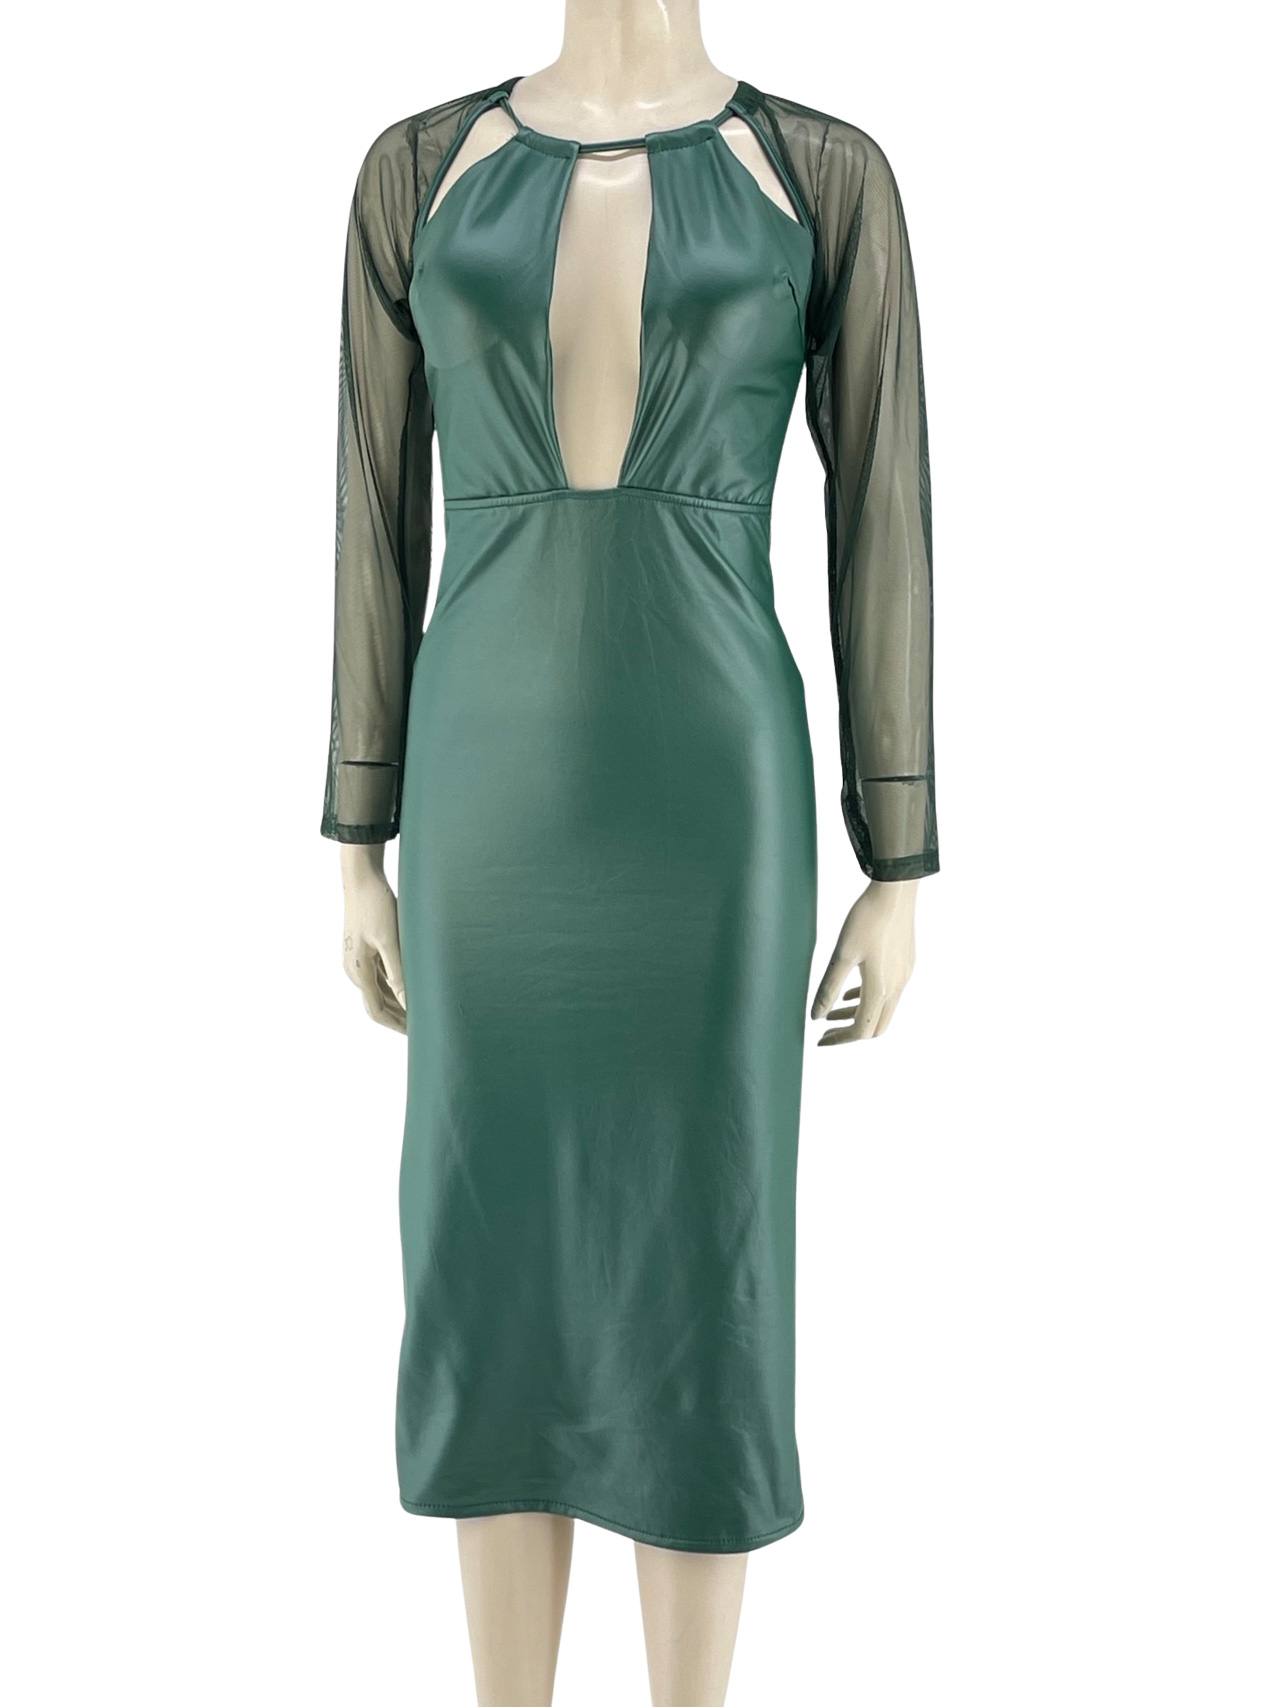 Φόρεμα midi δερματίνη κωδ. 26087 μπροστινή όψη- πράσινο